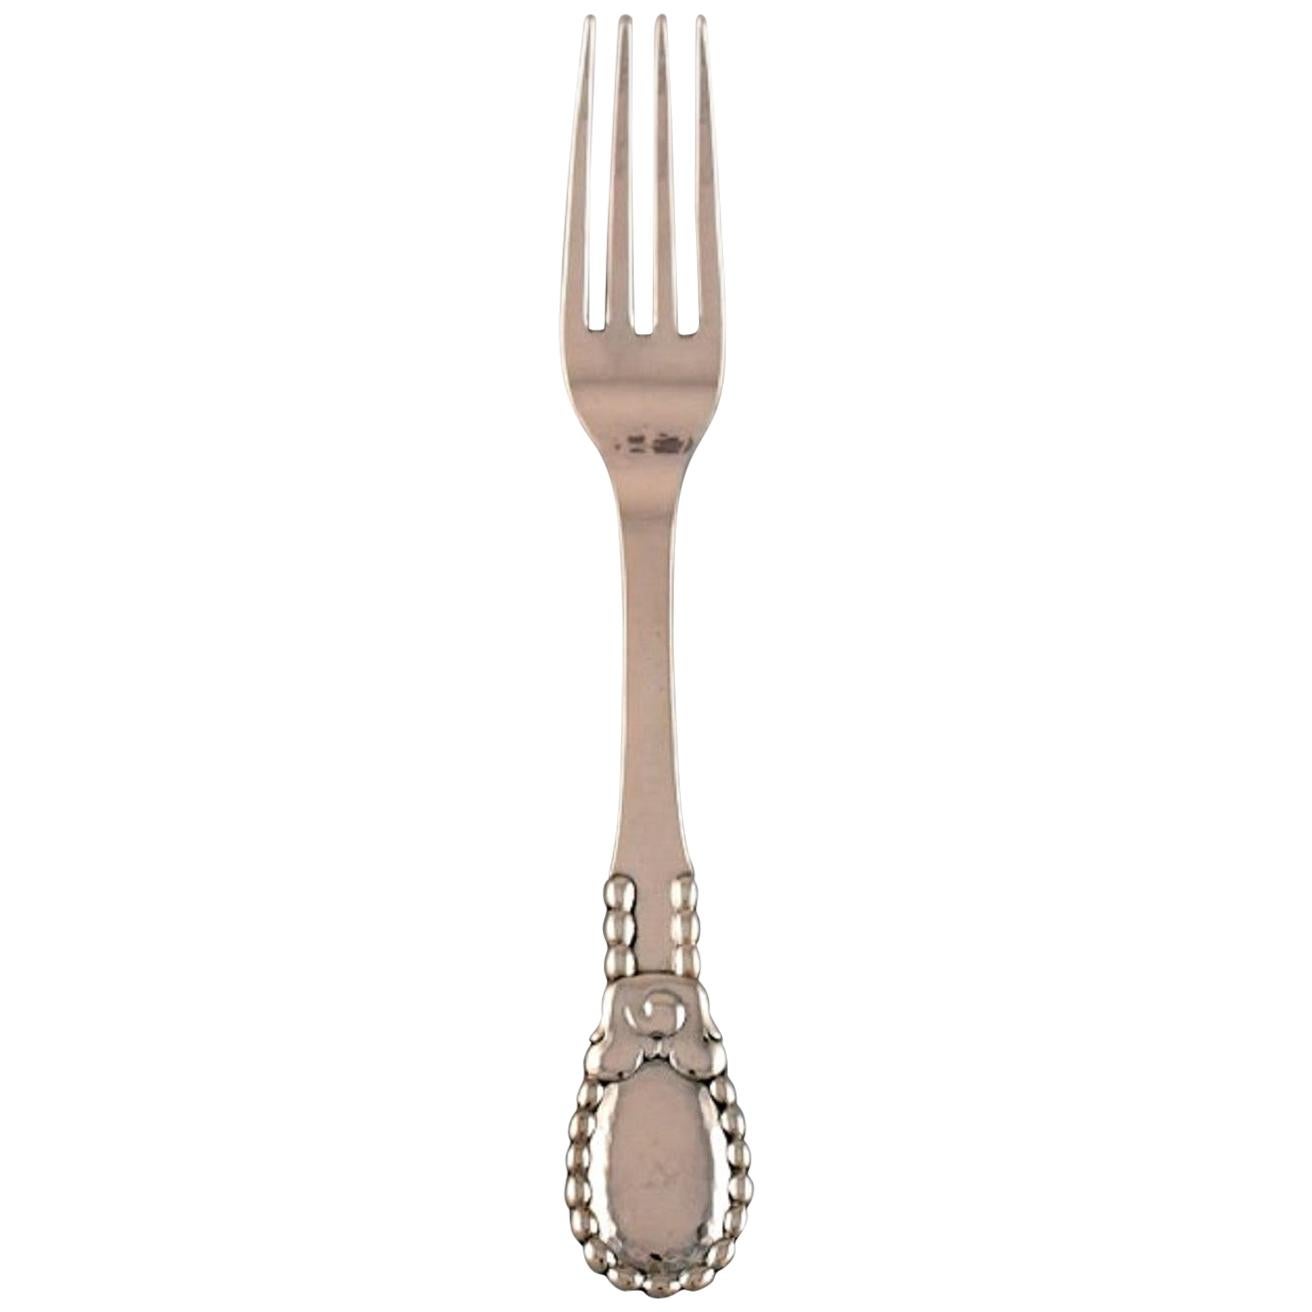 Evald Nielsen Number 13 Dinner Fork in Hammered Silver, 1920's